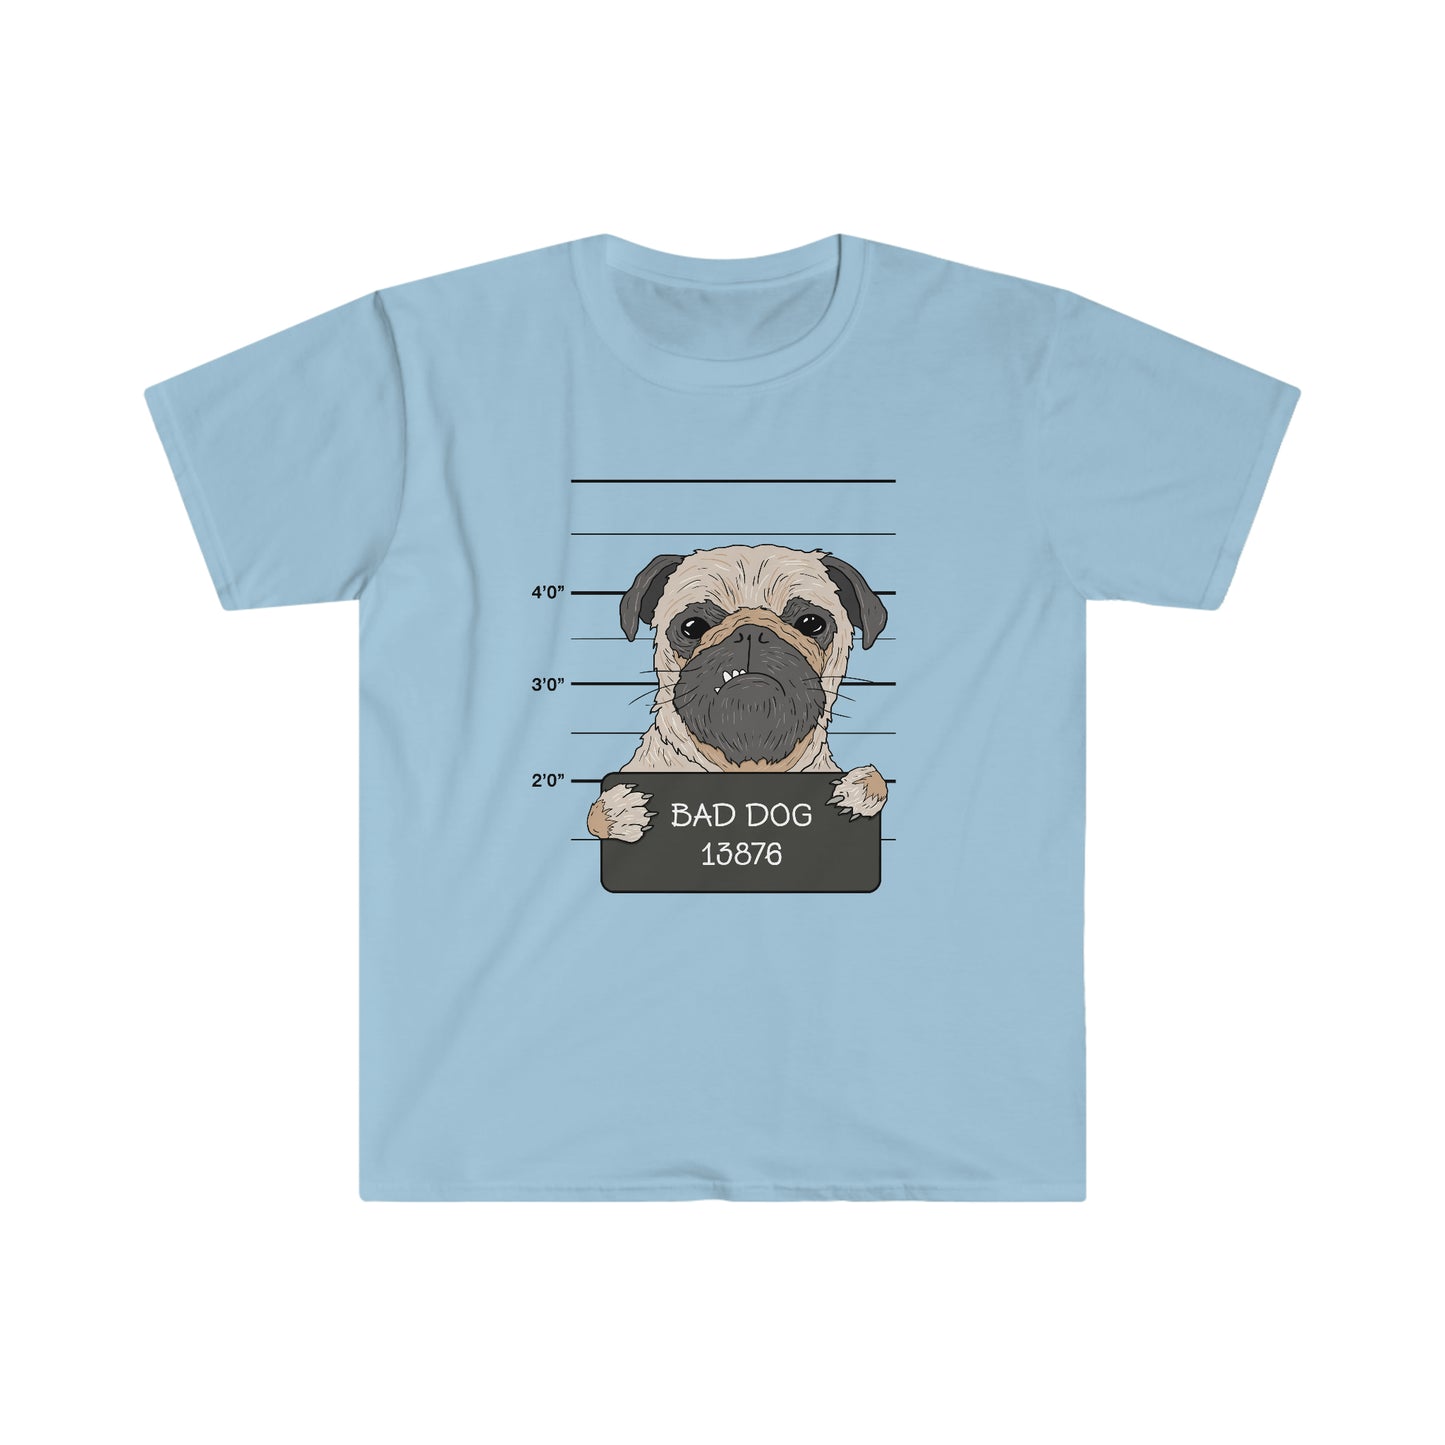 Bad Dog Pugshot - Unisex Softstyle T-Shirt